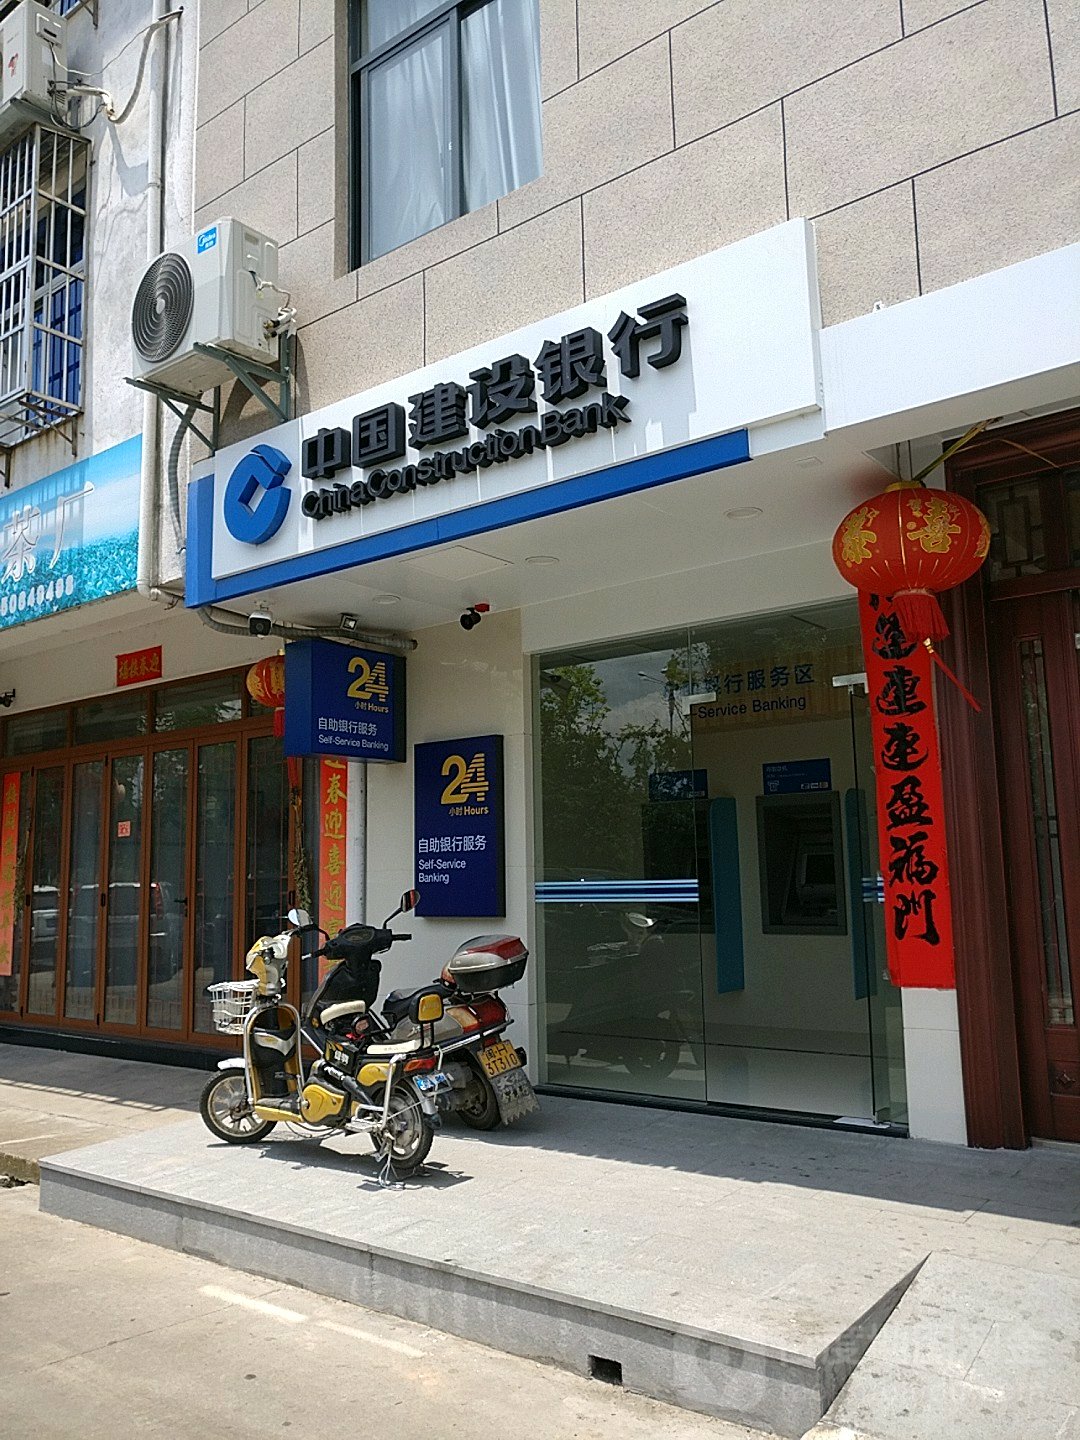 中國建設銀行24小時自助銀行服務